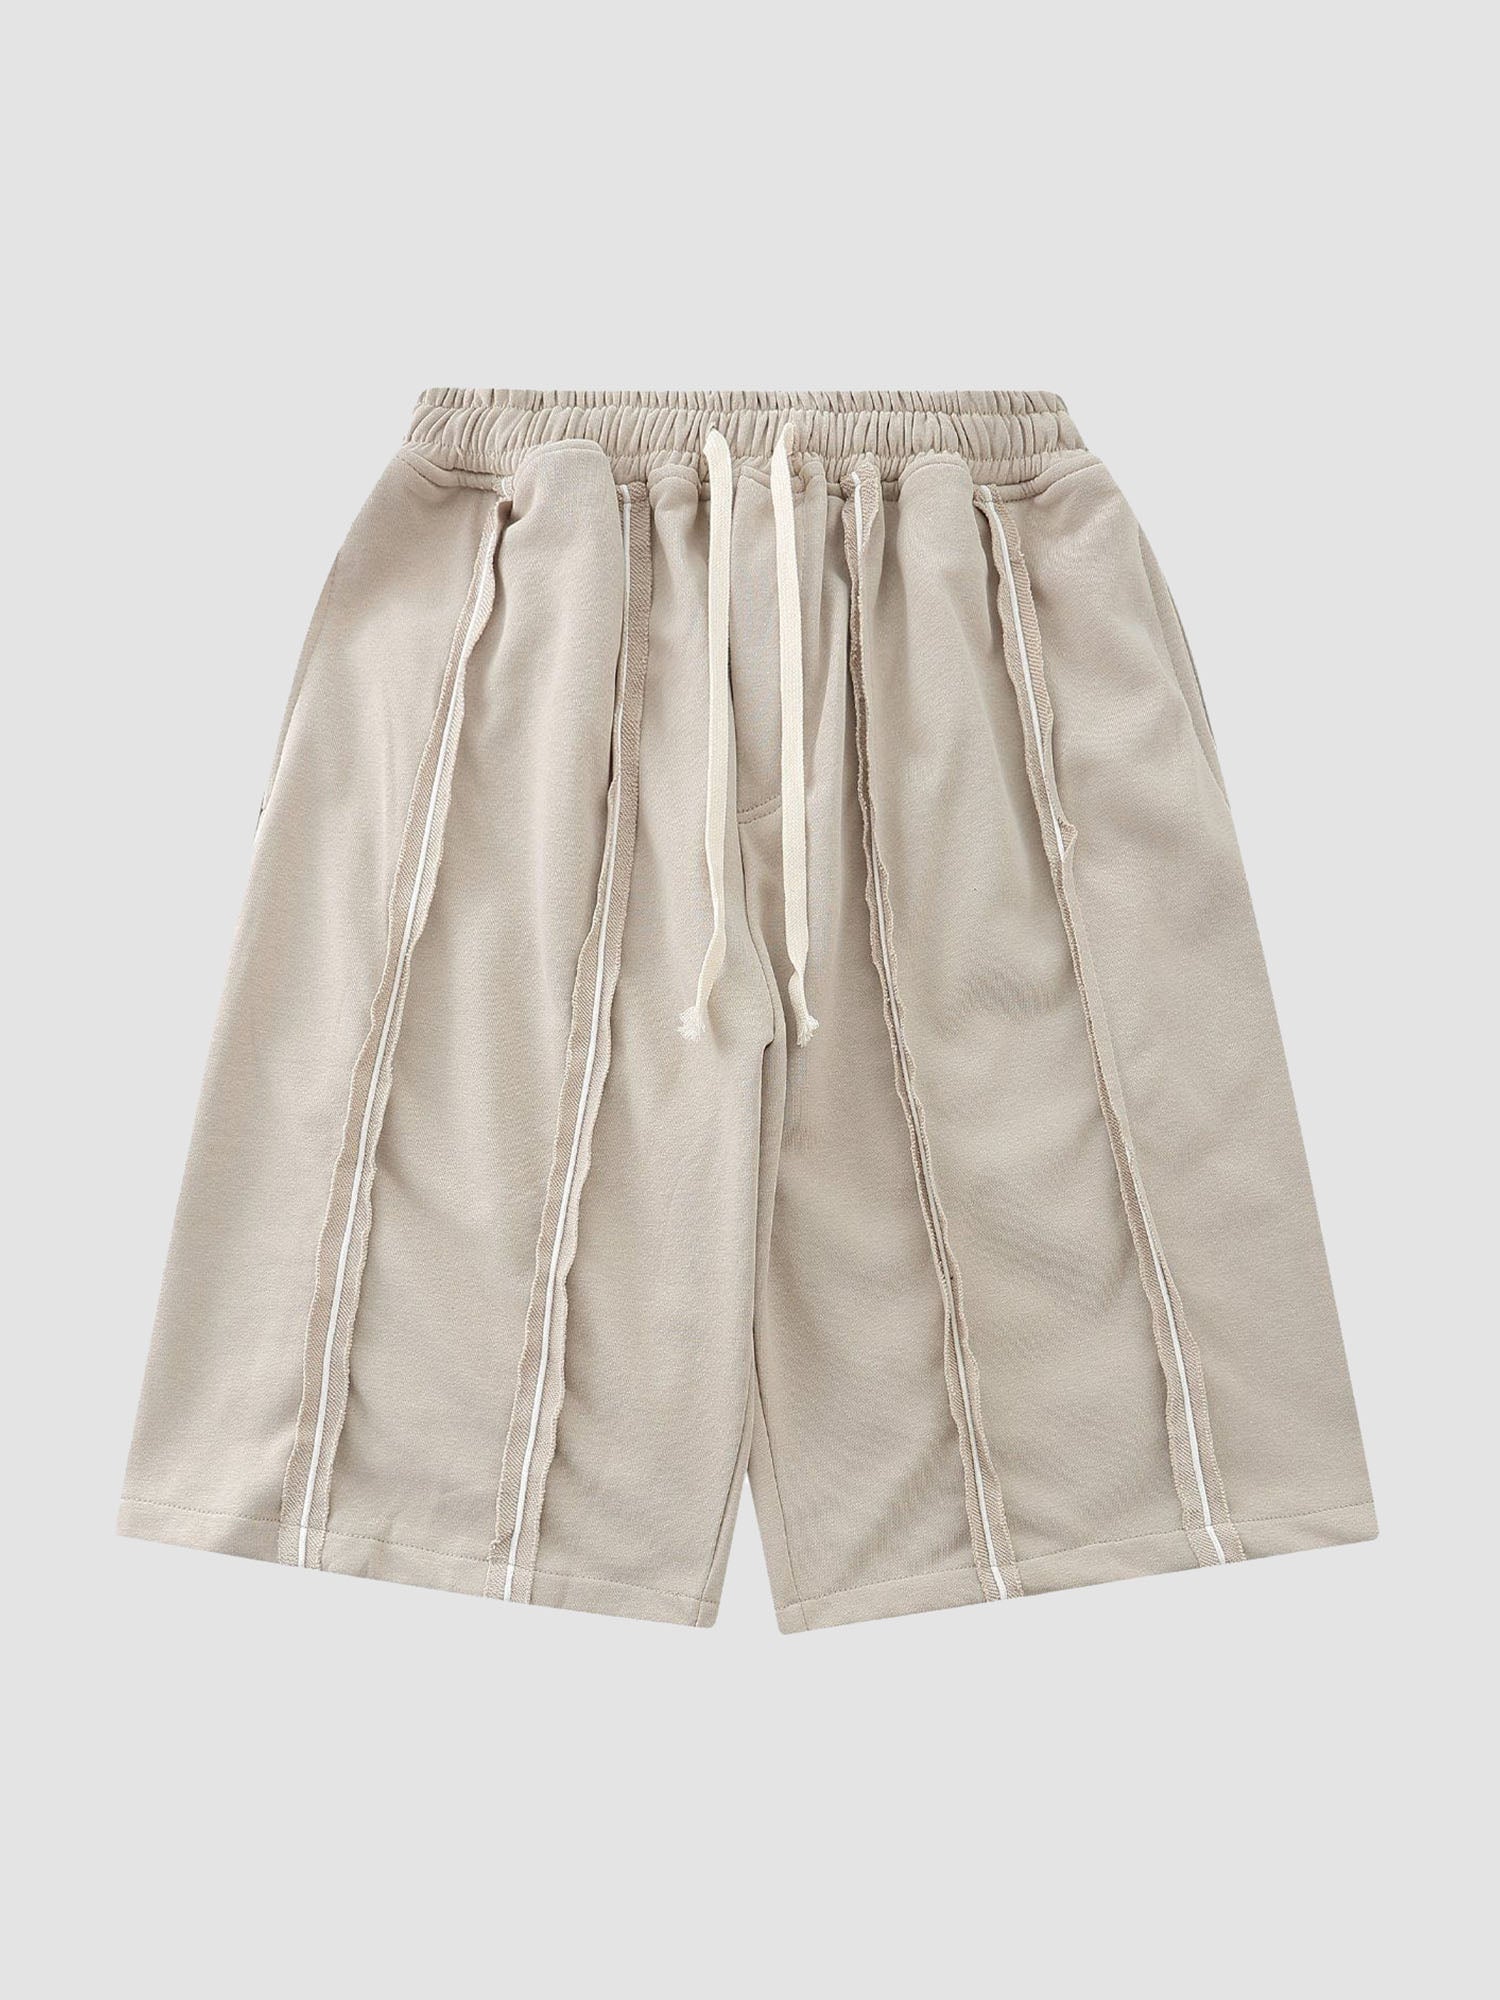 JUSTNOTAG Solid Color Drawstring Waist Shorts